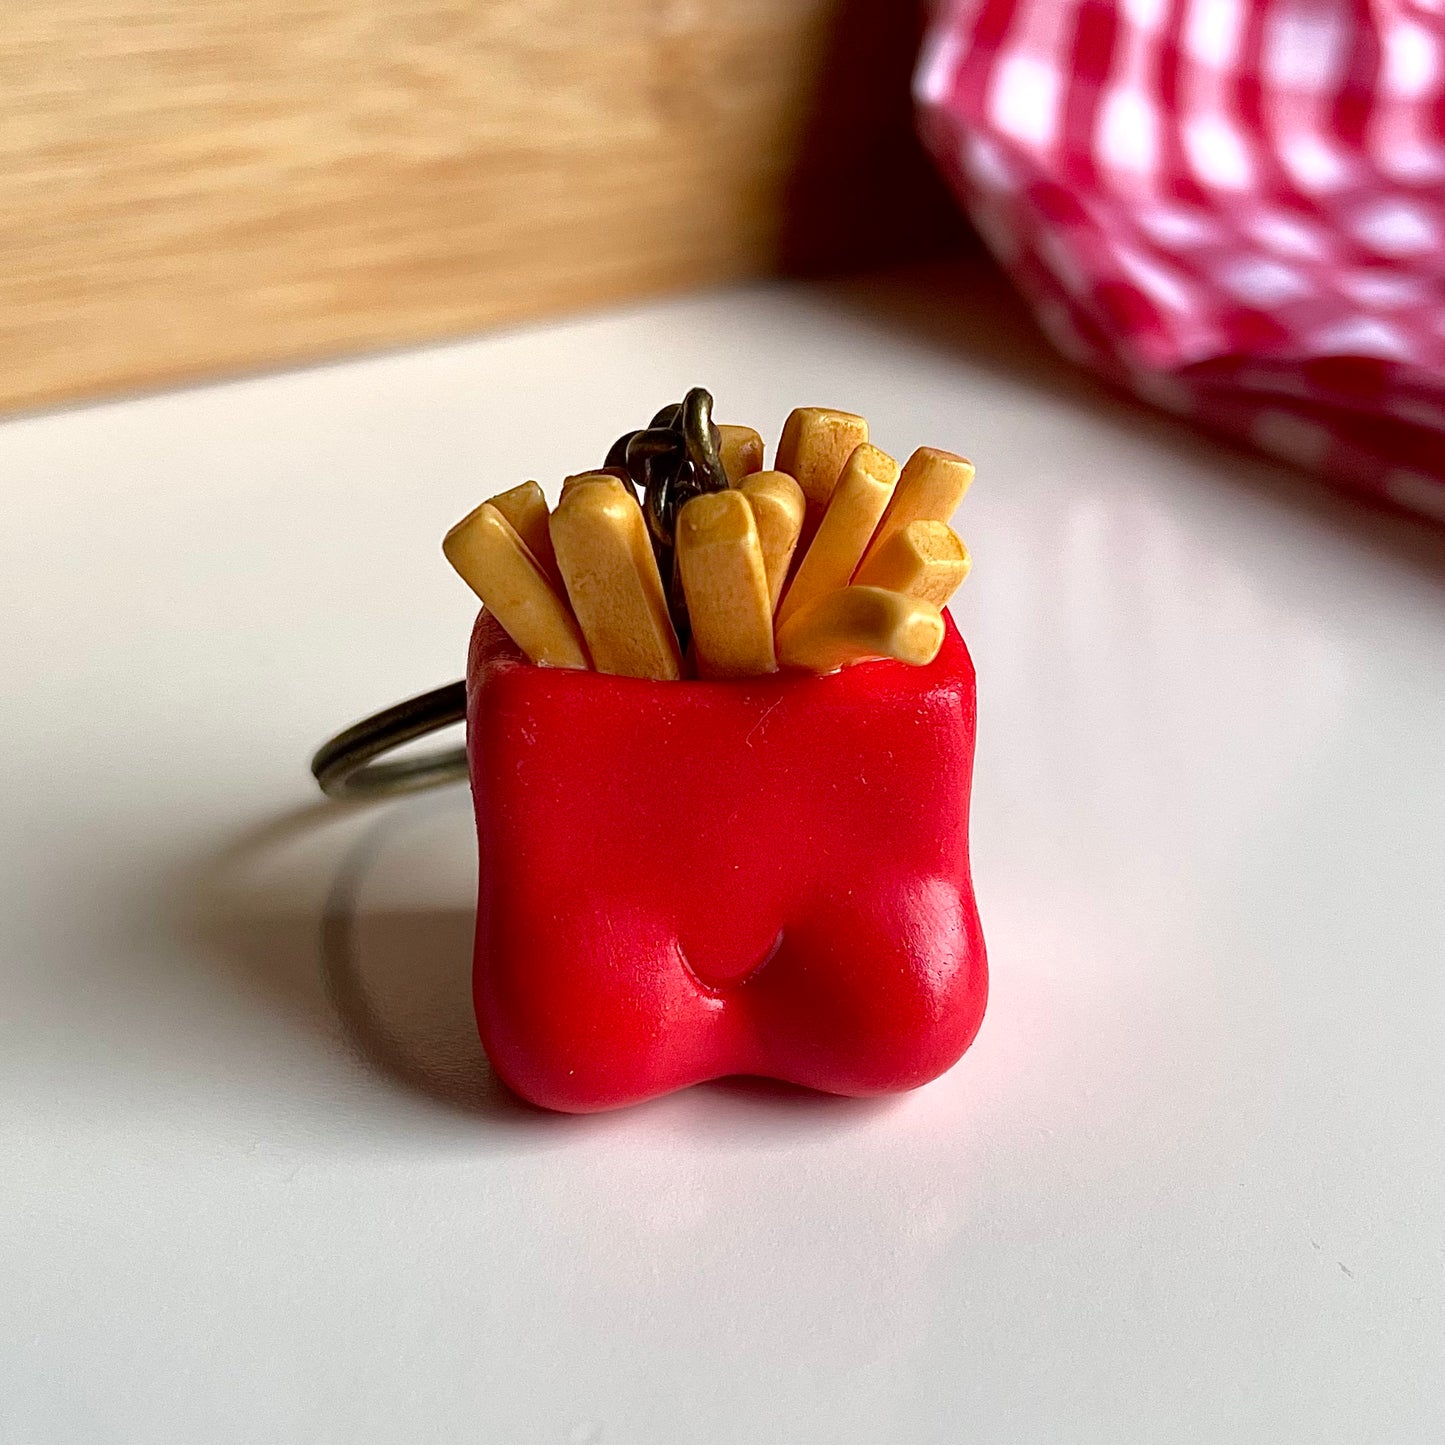 French fries keychain